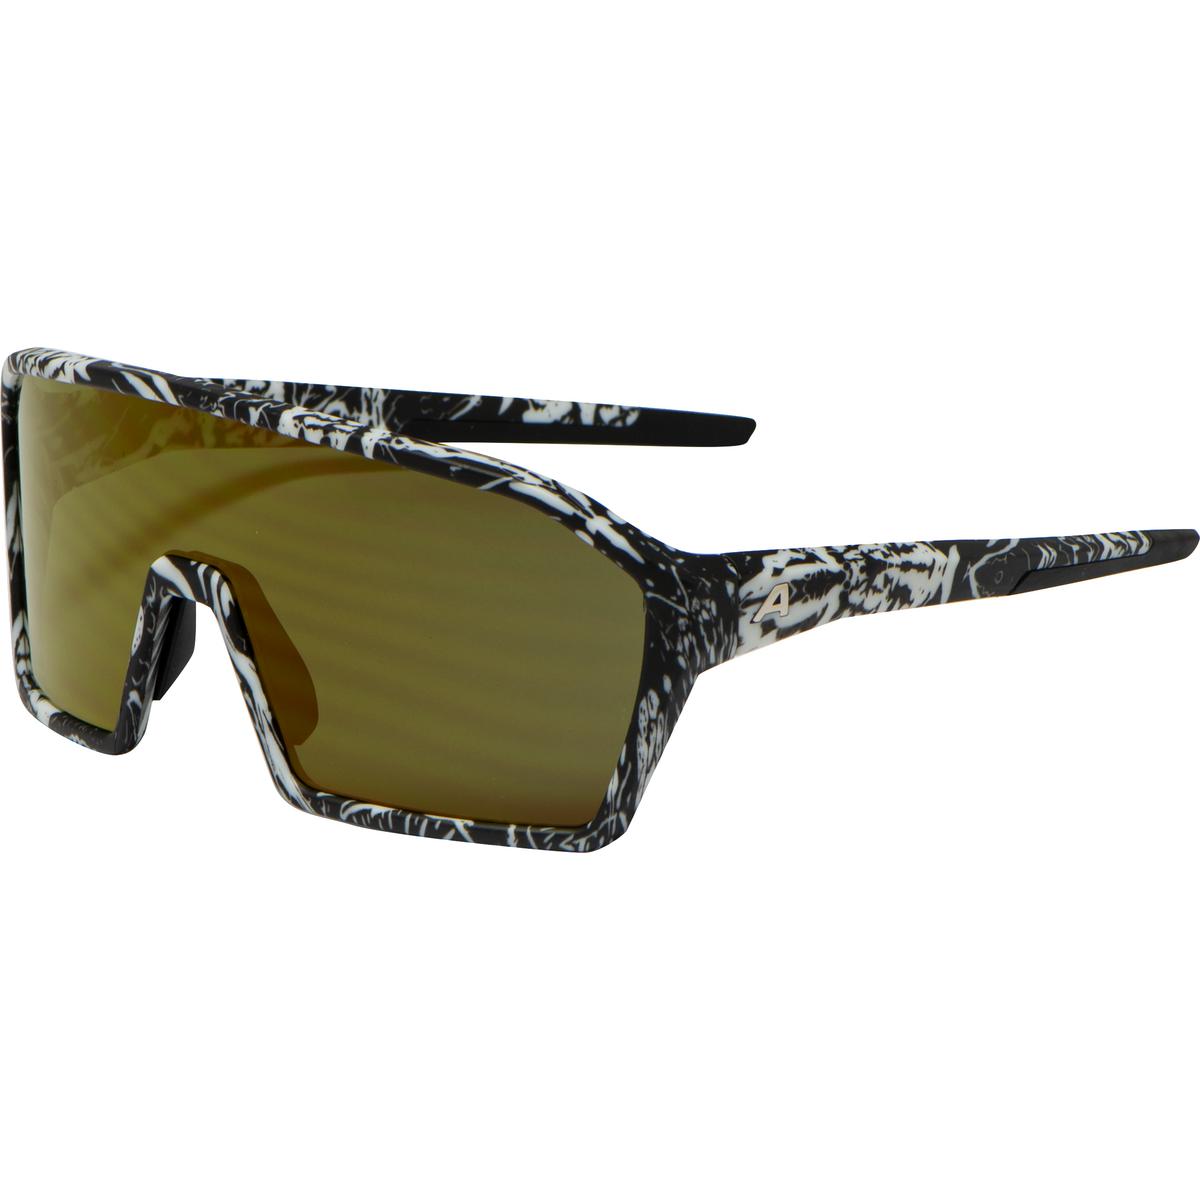 Produktbild von Alpina Ram Q-Lite Brille - blackbird matt